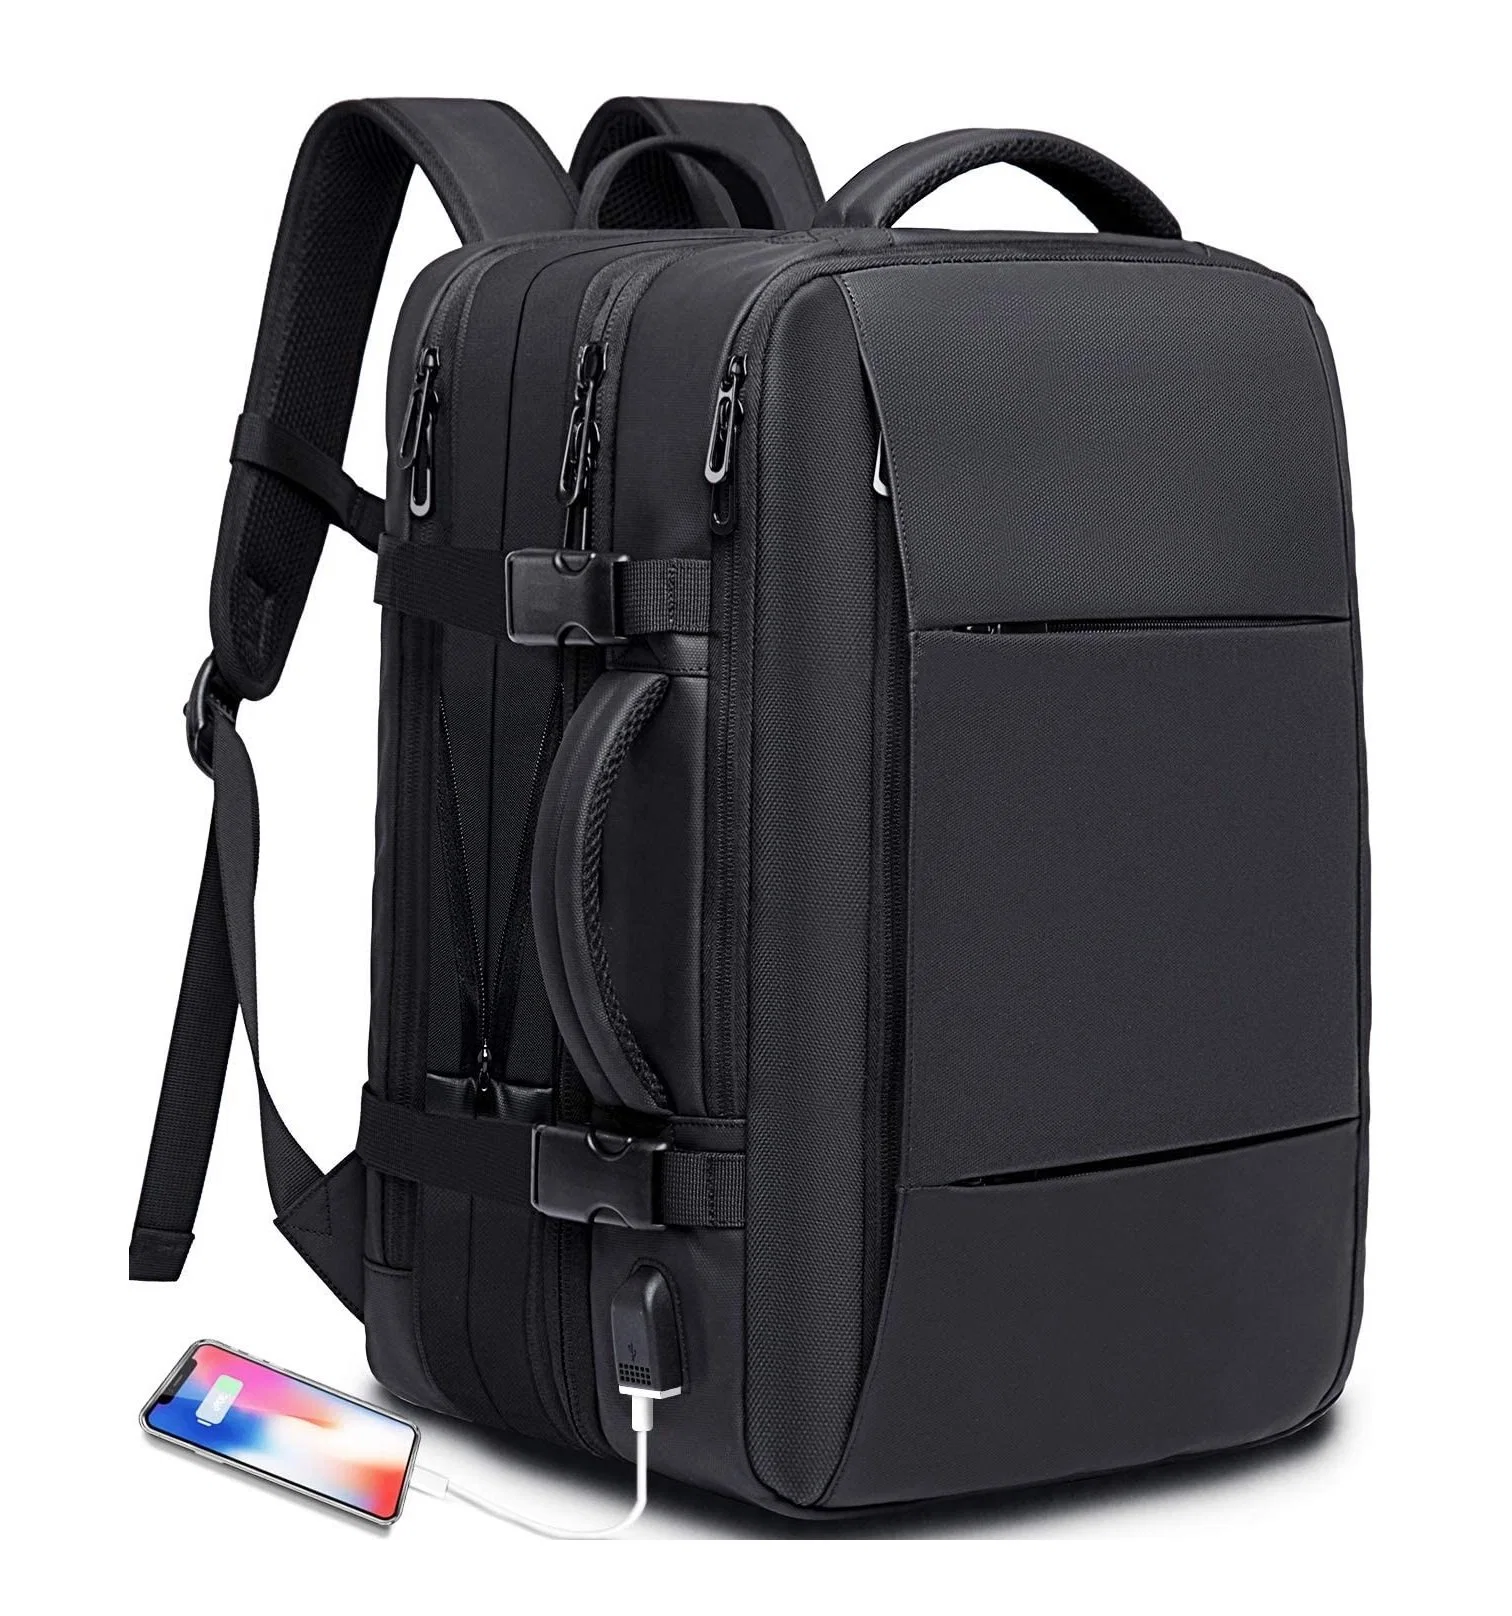 Sac à dos de voyage Sac à dos de transport approuvé pour les vols internationaux Sac sacs à dos imperméables pour ordinateur portable